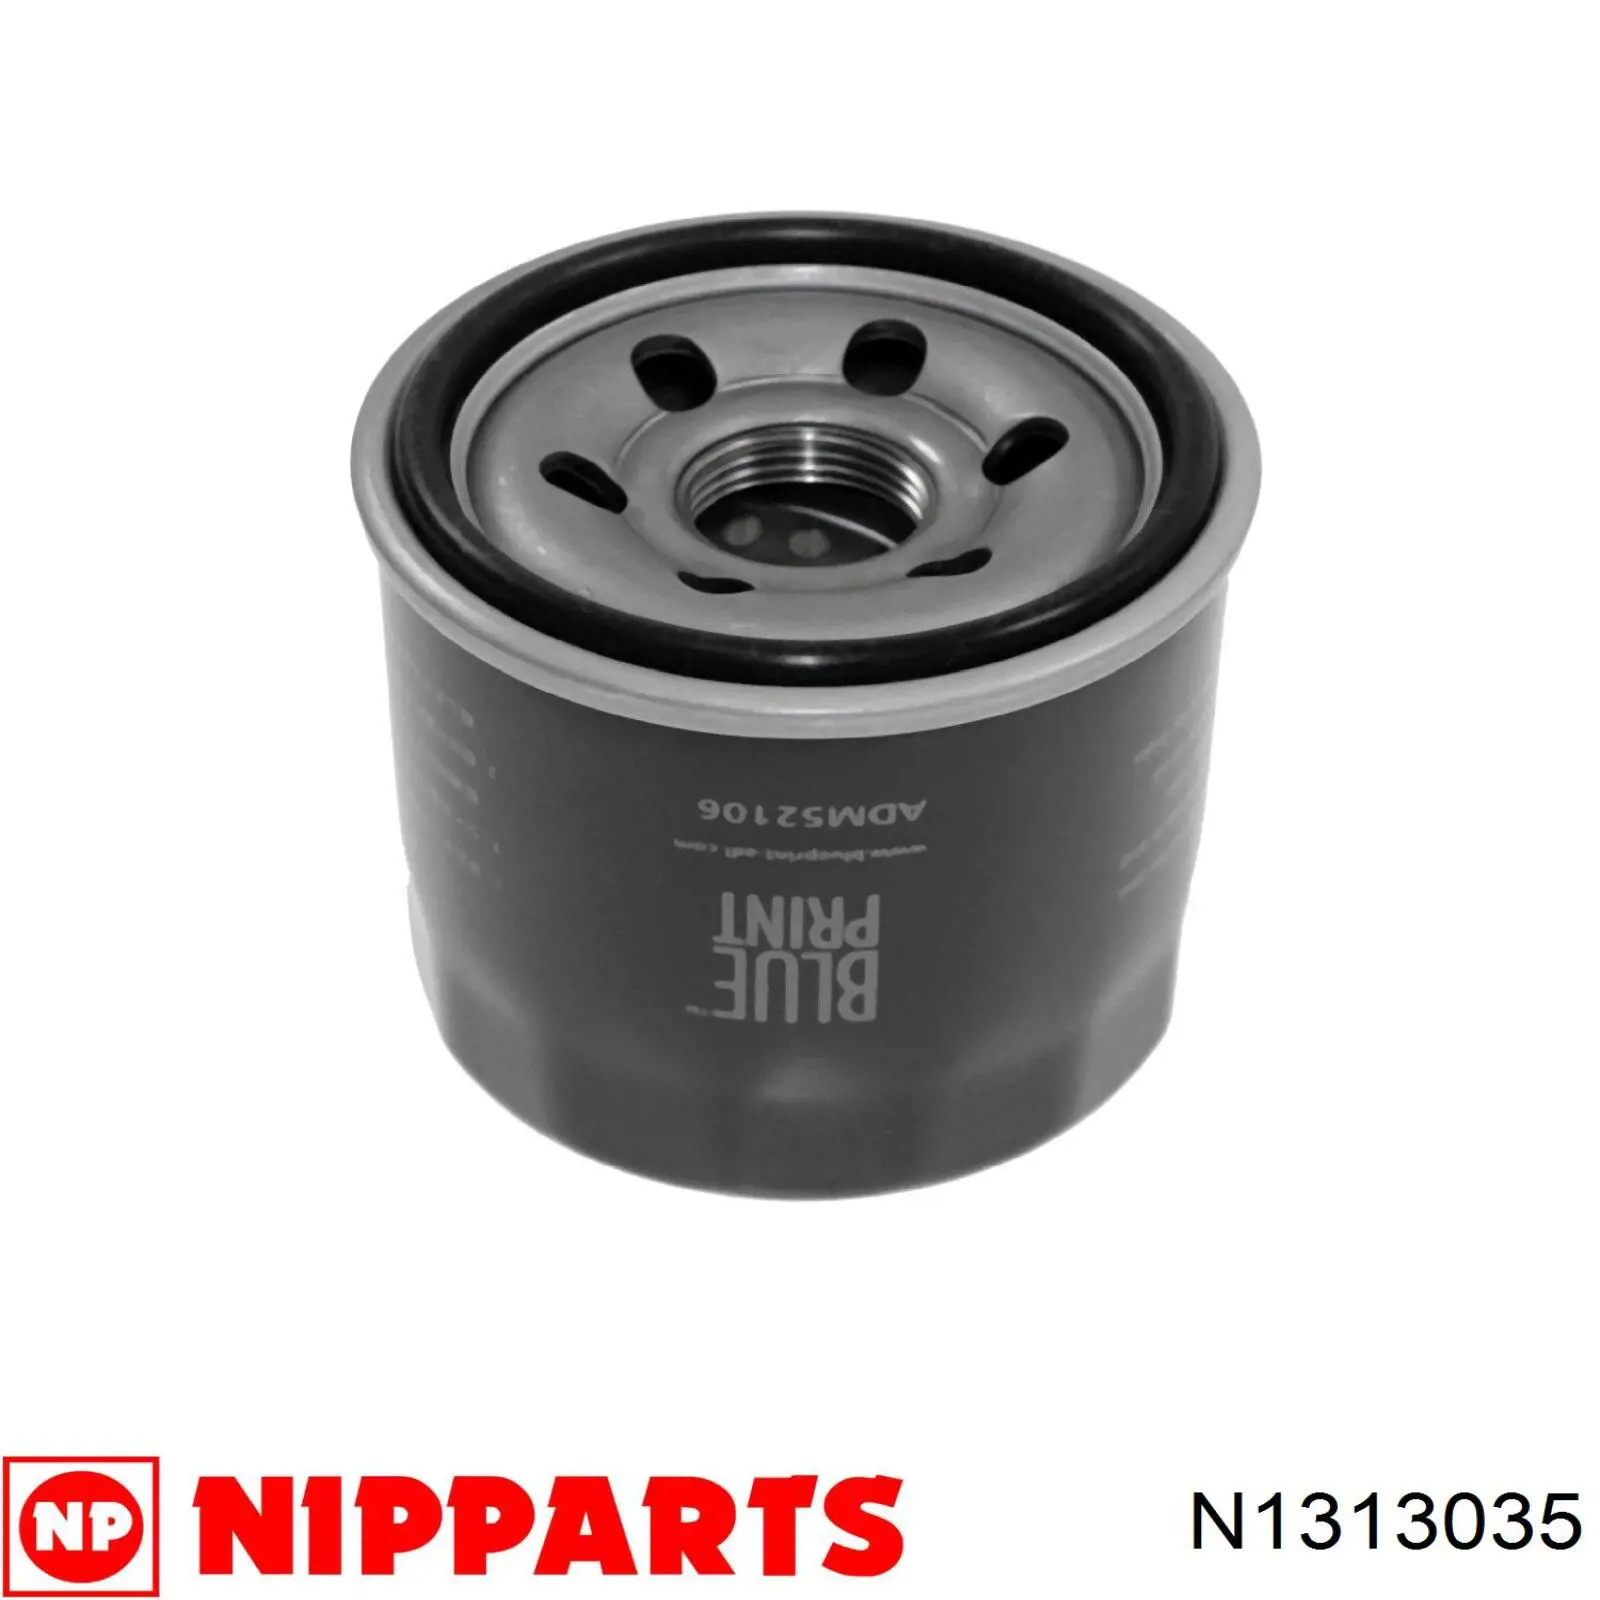 N1313035 Nipparts filtro de aceite